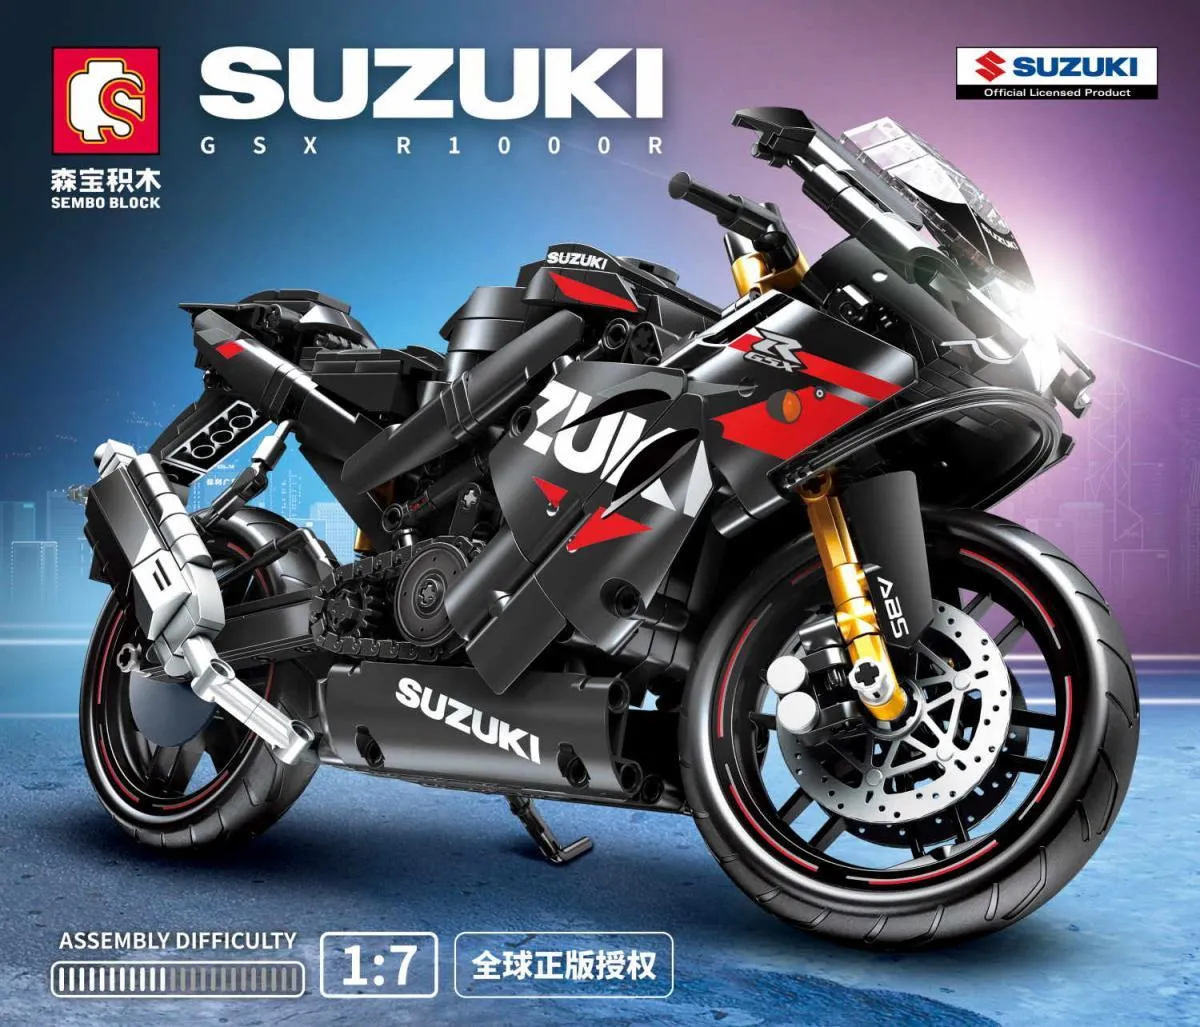 Suzuki™ GSX-R 1000 R Gallery